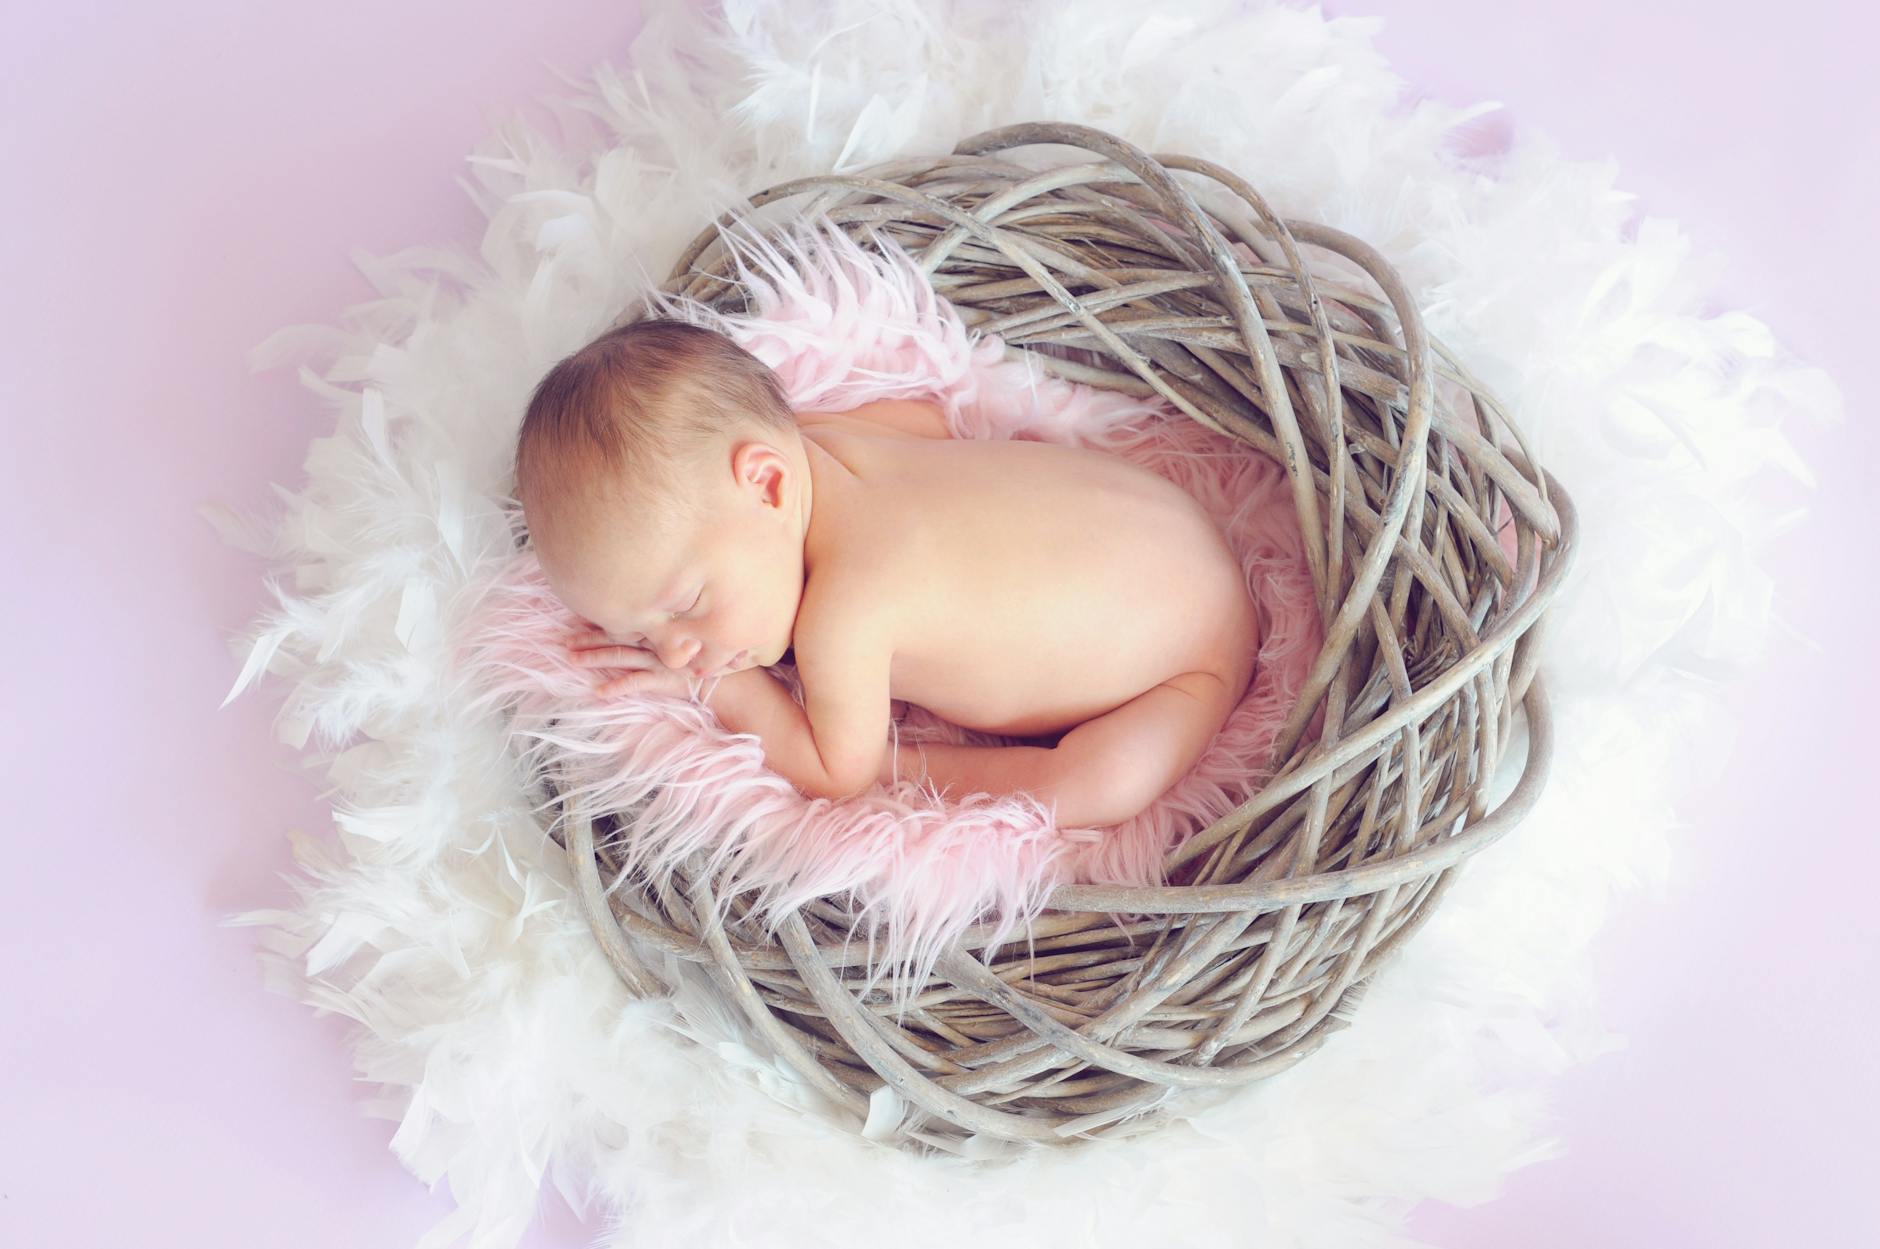 أجمل صور الاطفال | Heartwarming Baby Photos | جزء 2 Baby-sleeping-baby-baby-girl